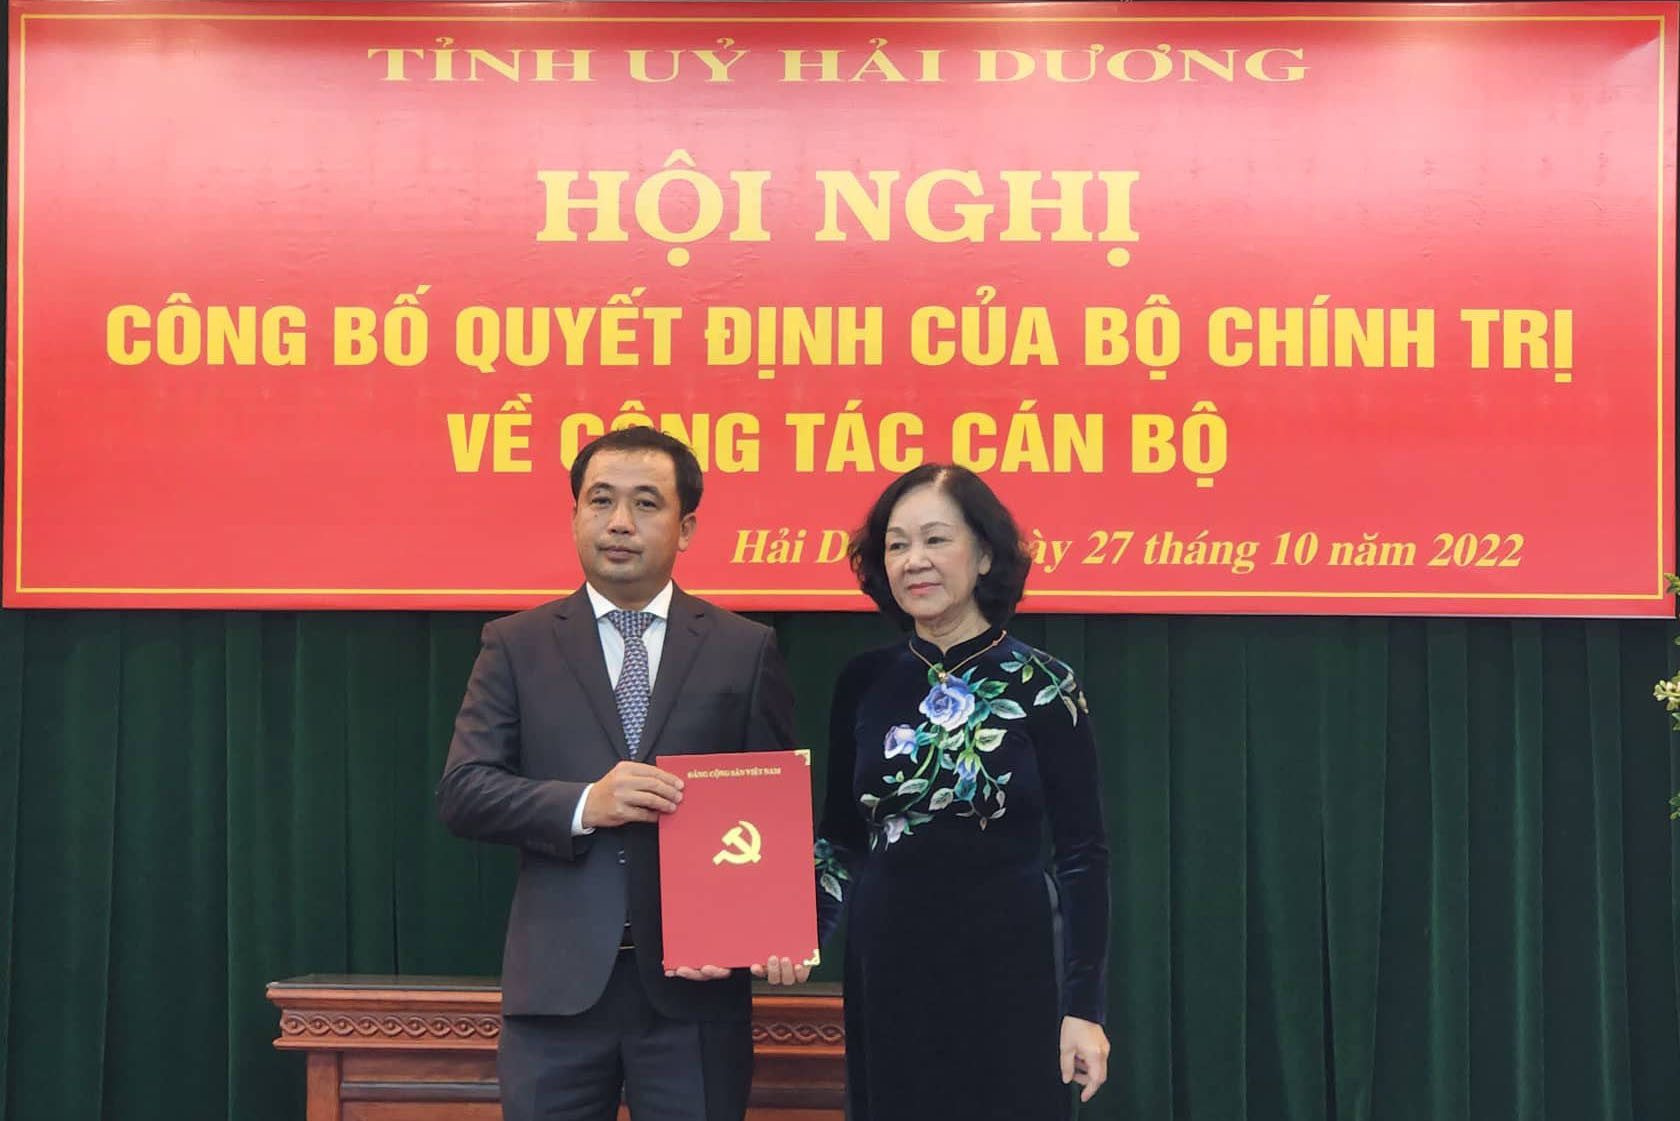 VIDEO: Đồng chí Trần Đức Thắng được điều động làm Bí thư Tỉnh ủy Hải Dương